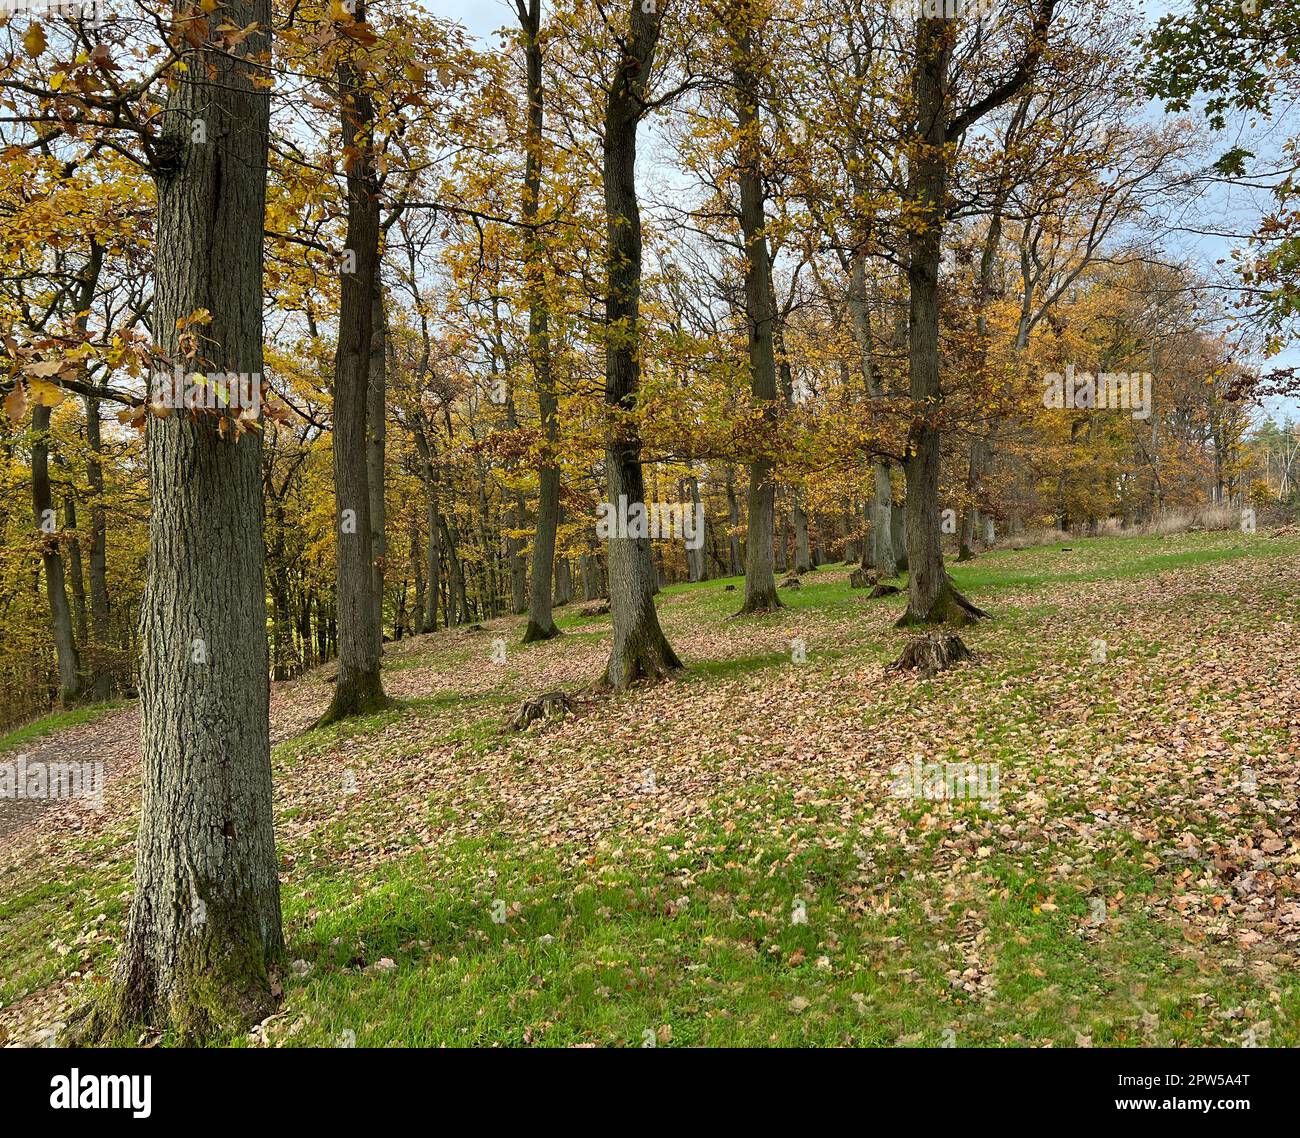 Herbstwald, Herbstimpression im Wald mit bunten Blaettern. Otoño bosque, otoño impresión en el bosque con hojas coloridas. Foto de stock